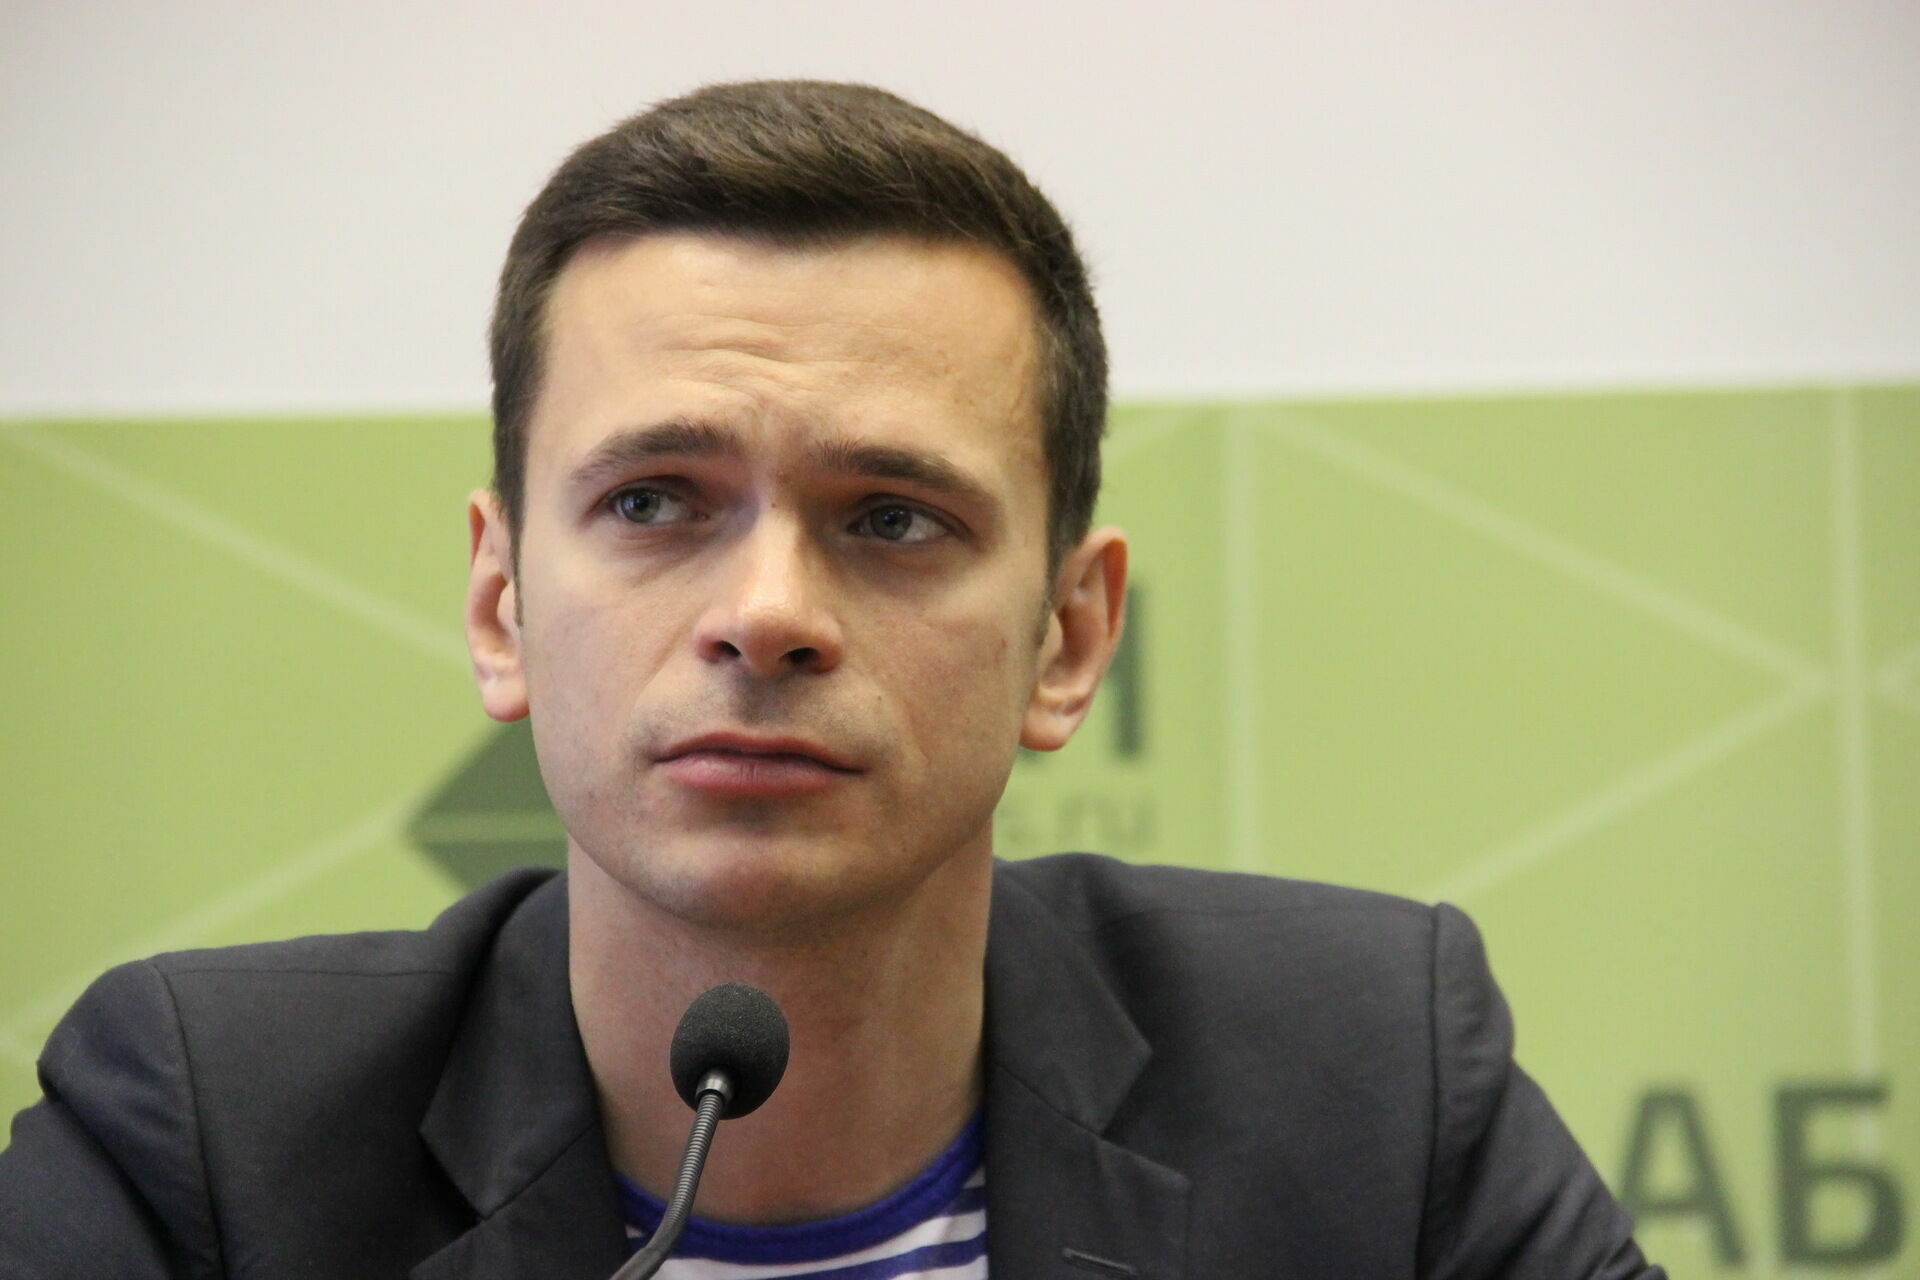 Оппозиционер Илья Яшин уходит с поста главы столичного района